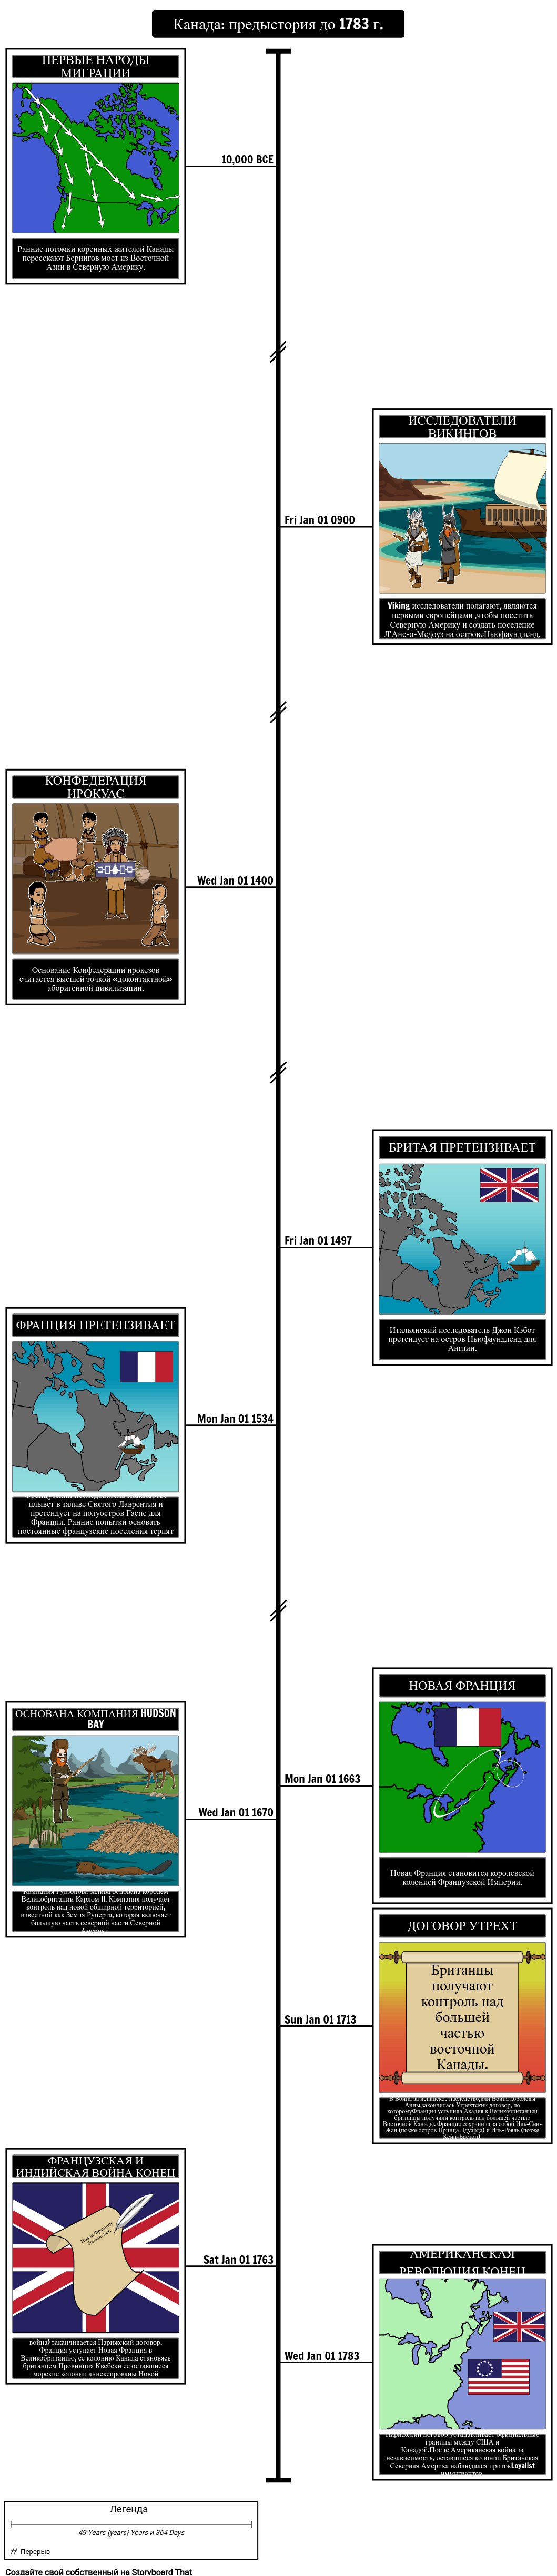 Хронология канадской истории до 1783 года